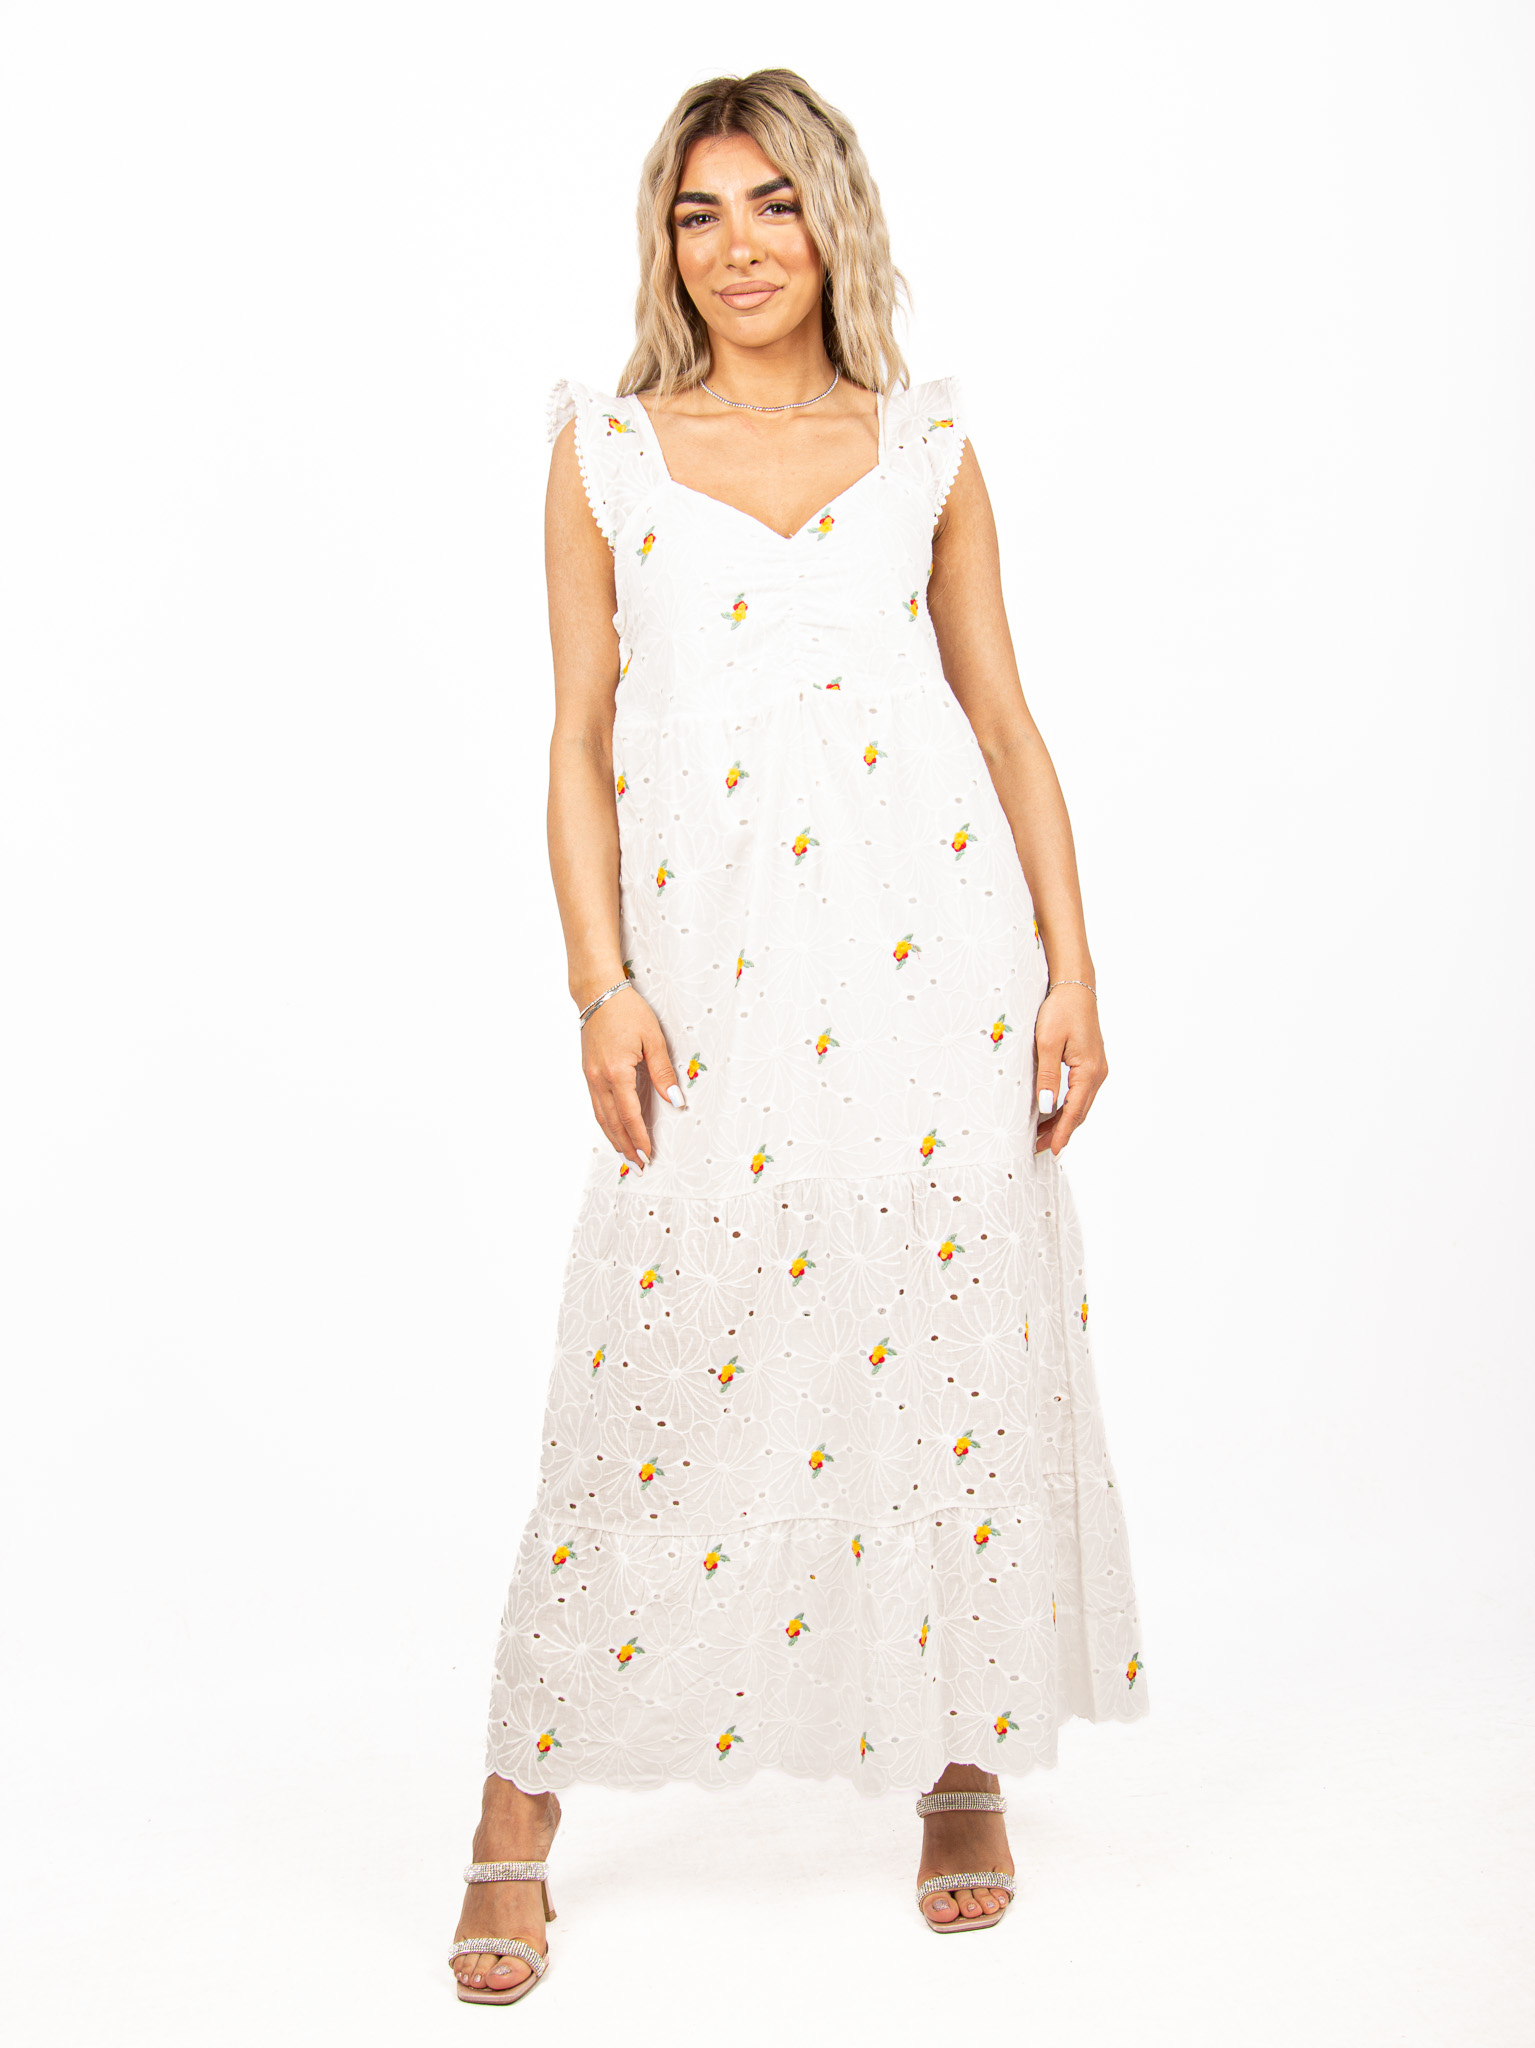 Φόρεμα Κυπούρ Δαντέλα με Κεντήματα Λευκό | EllenBoutique